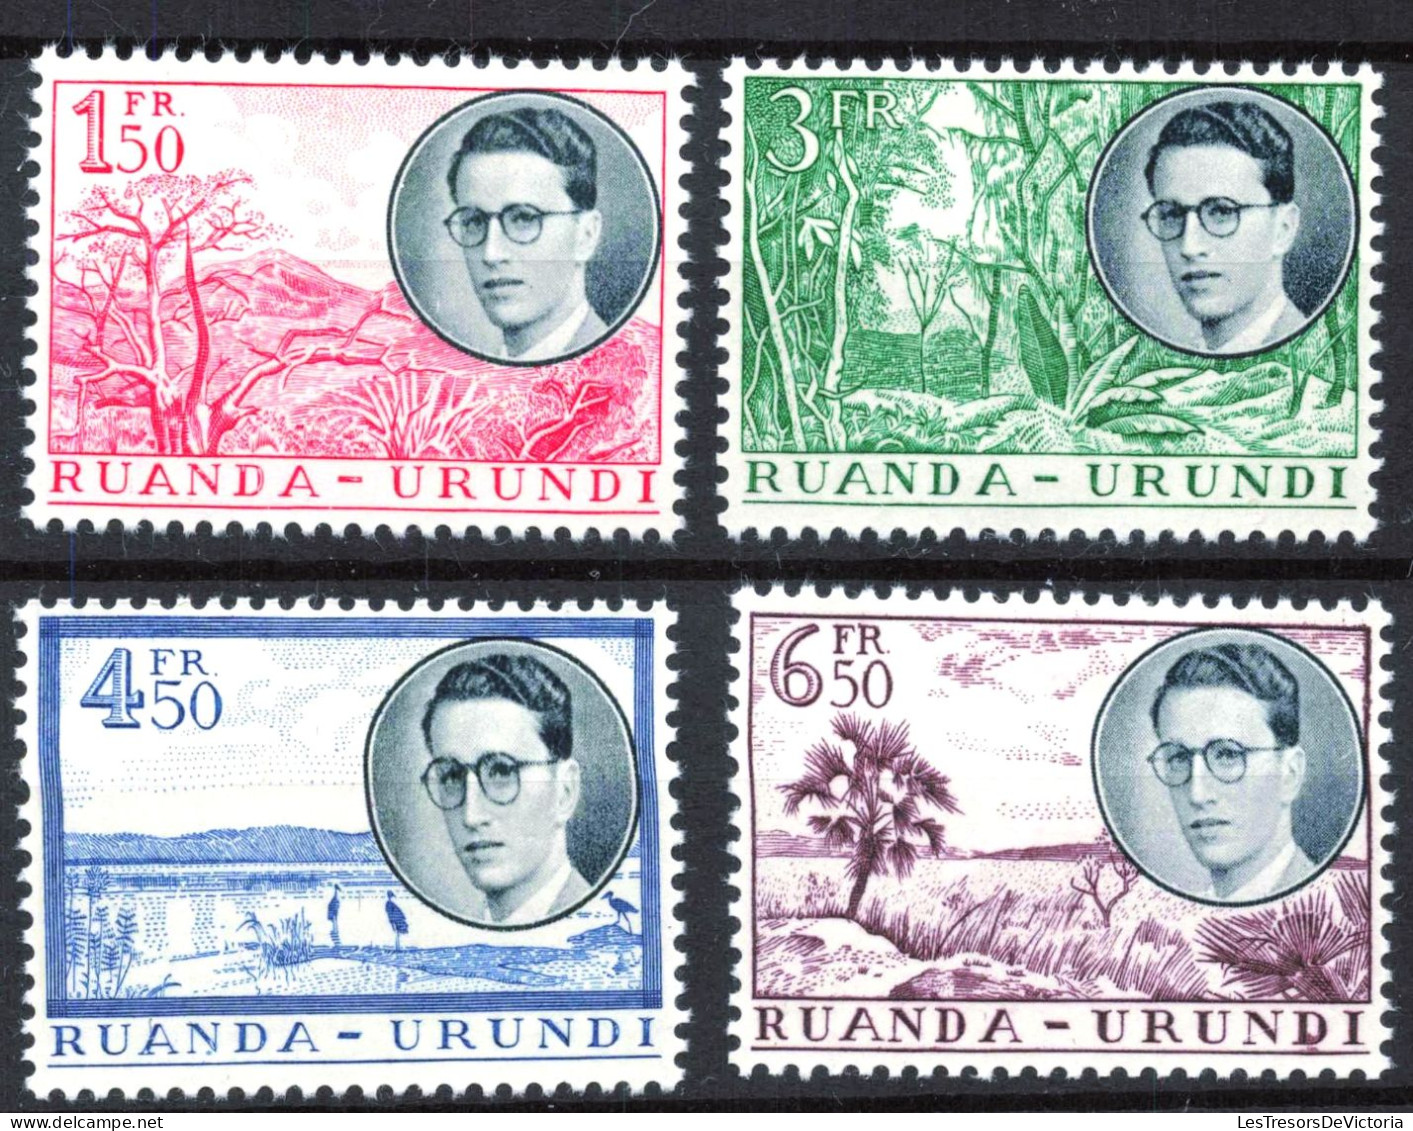 Timbre - Ruanda Urundi - COB 50/61* - 1924 - Timbre Congo Belge Surchargés Ruanda Urundi - Cote 45 - Ungebraucht